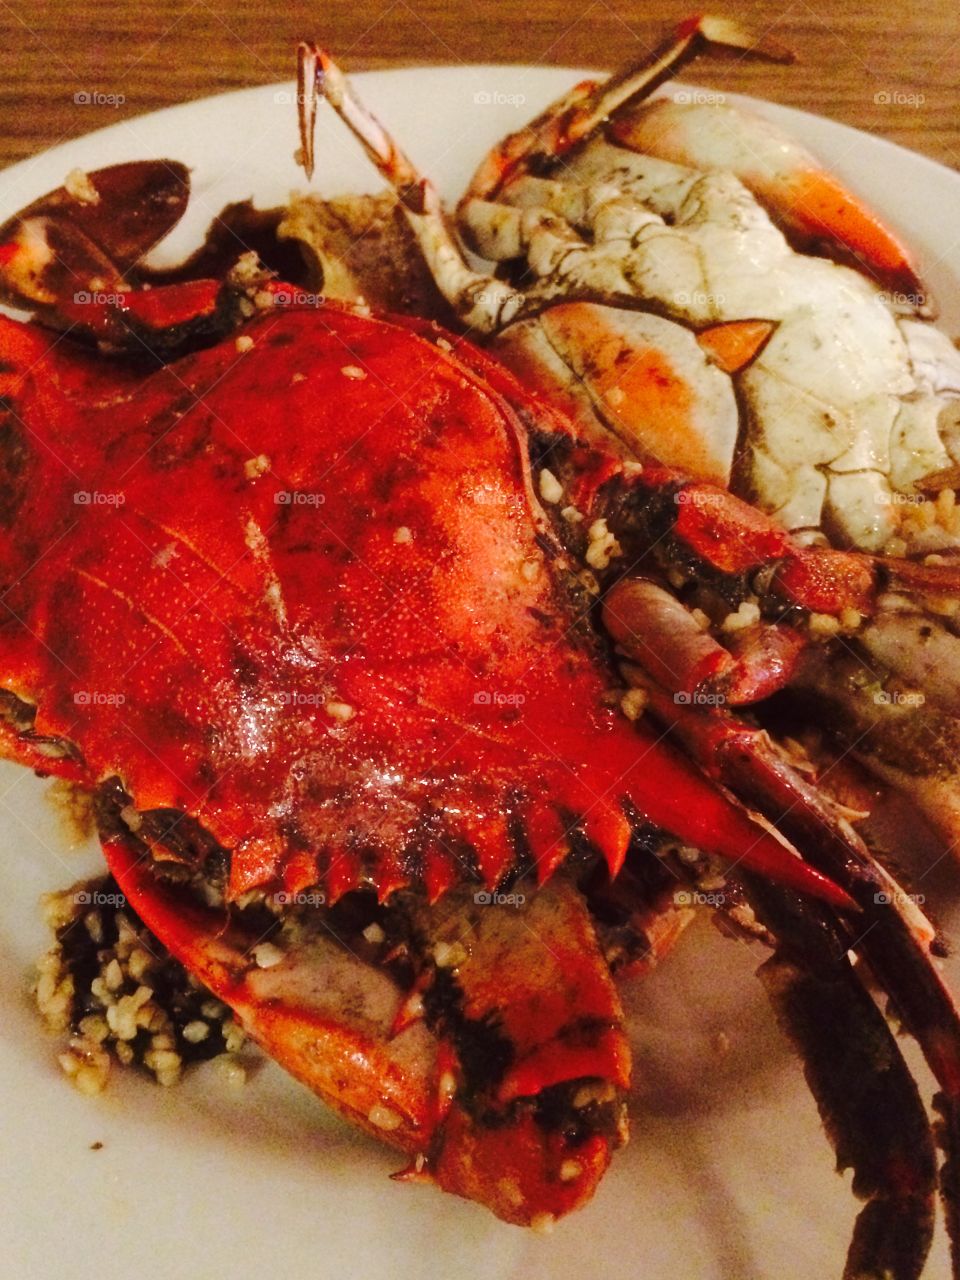 Singapore Mud Crab